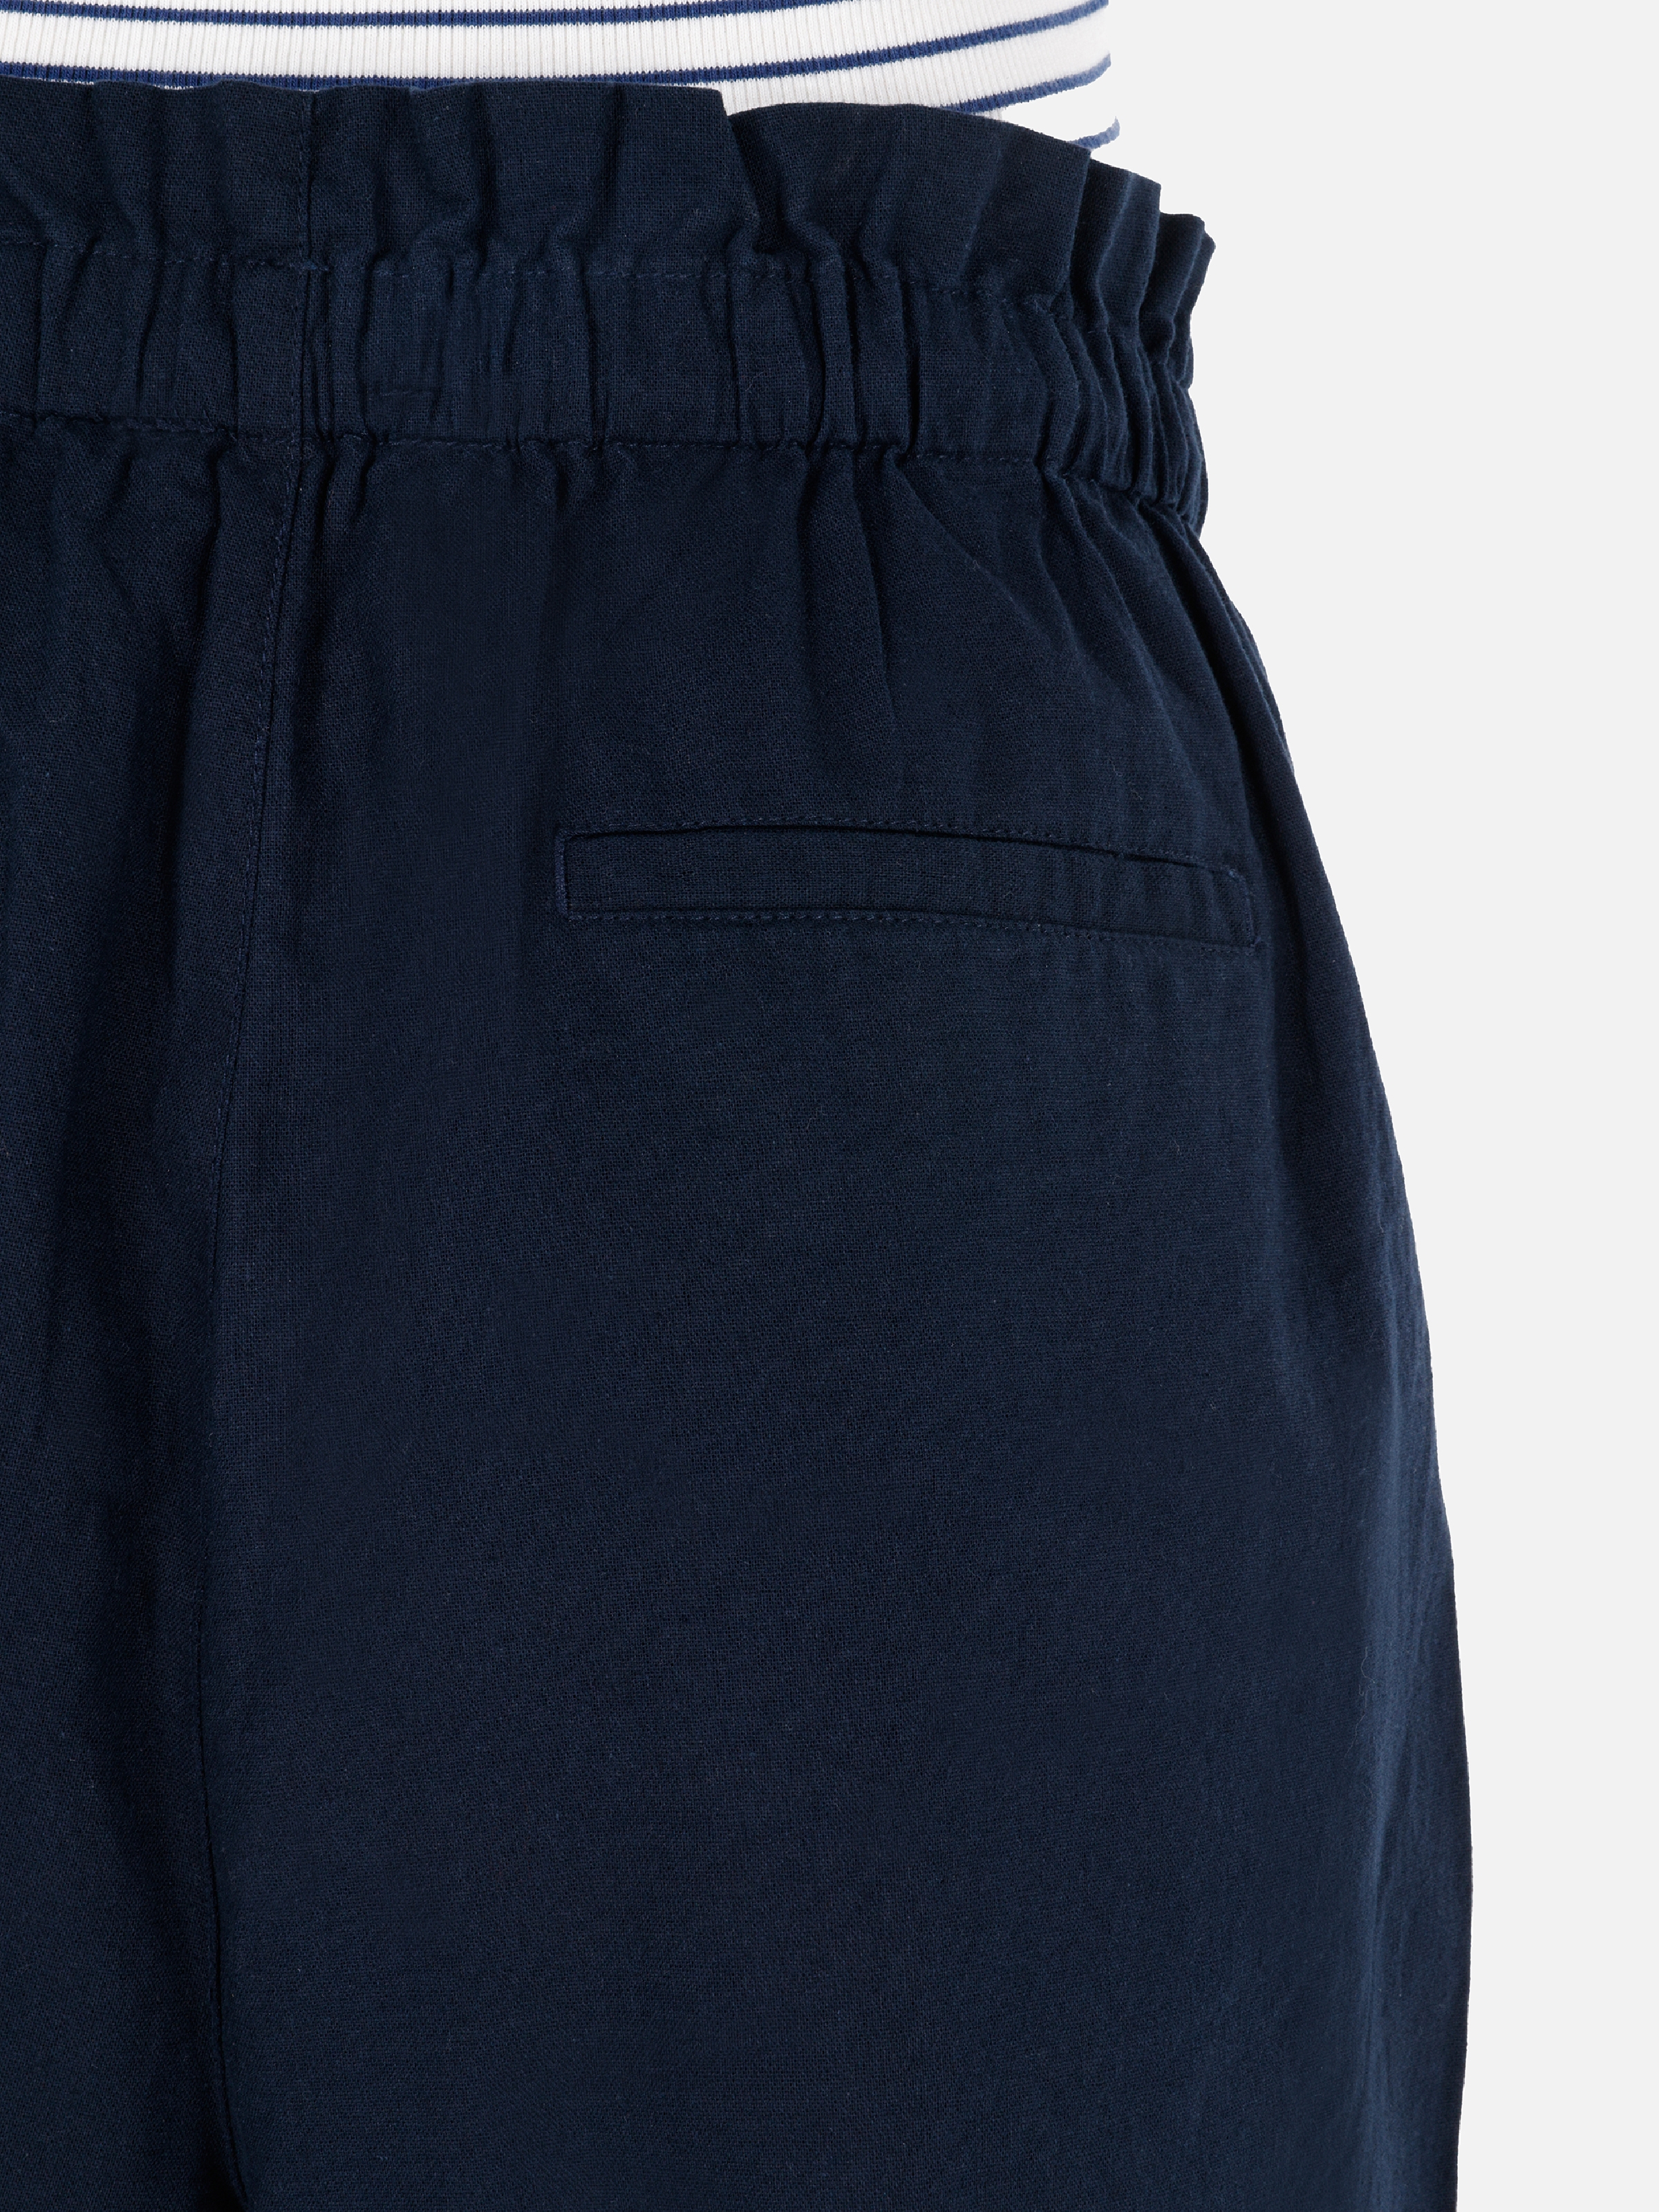 Afișați detalii pentru Short / Pantaloni Scurti De Dama Albastru Marin Regular Fit  